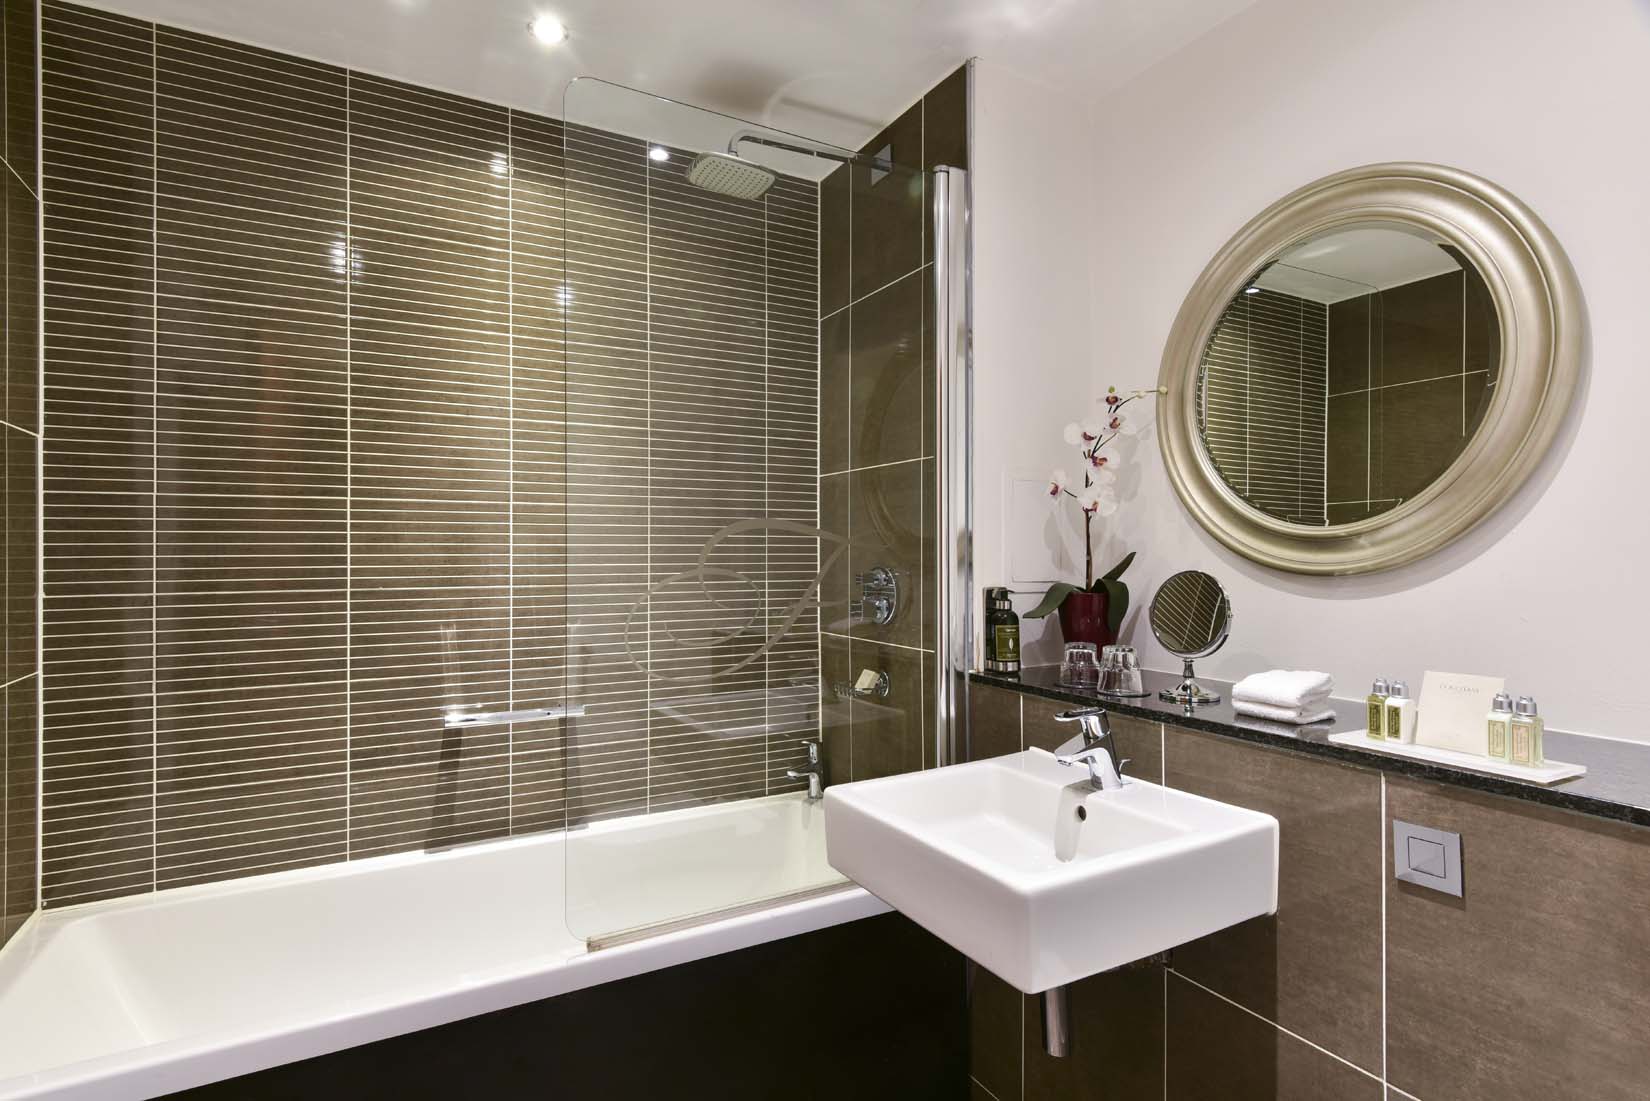 studio deluxe apartments rooms glasgow bathroom with bathtub